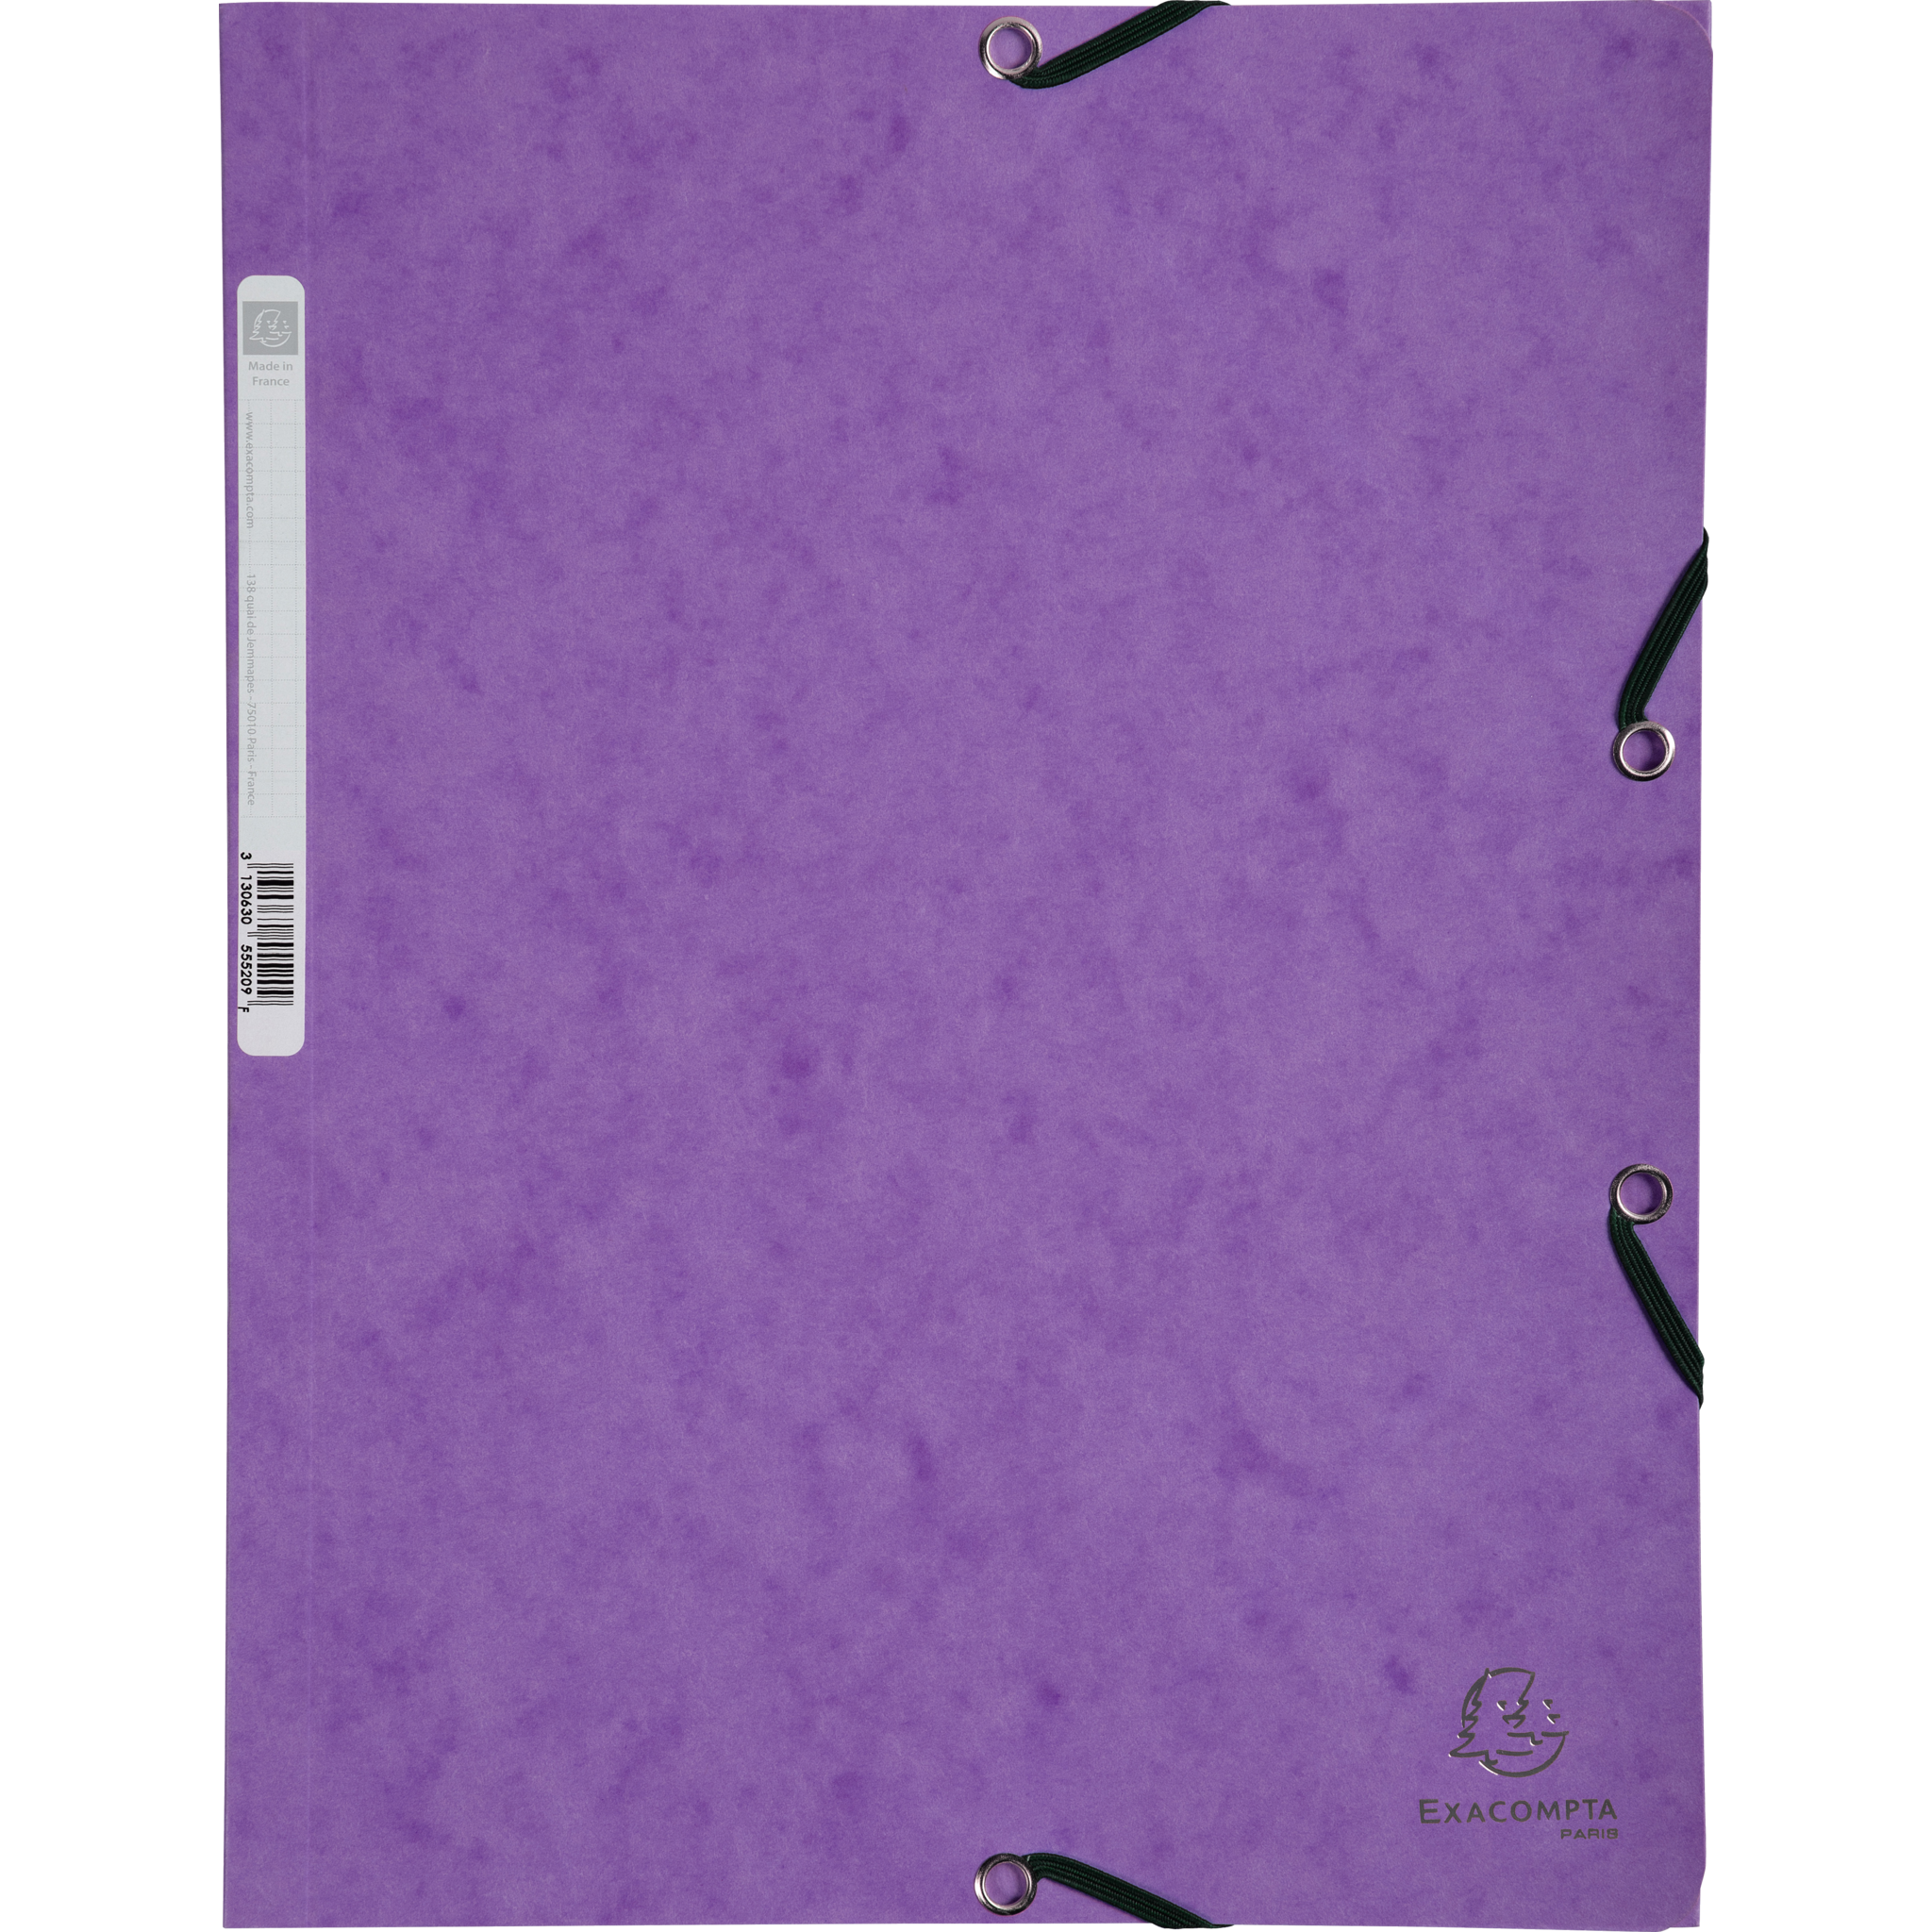 EXACOMPTA Sammelmappen mit Gummizug und 3 Klappen, Colorspan-Karton 400g/m2, für DIN A4 - Violett